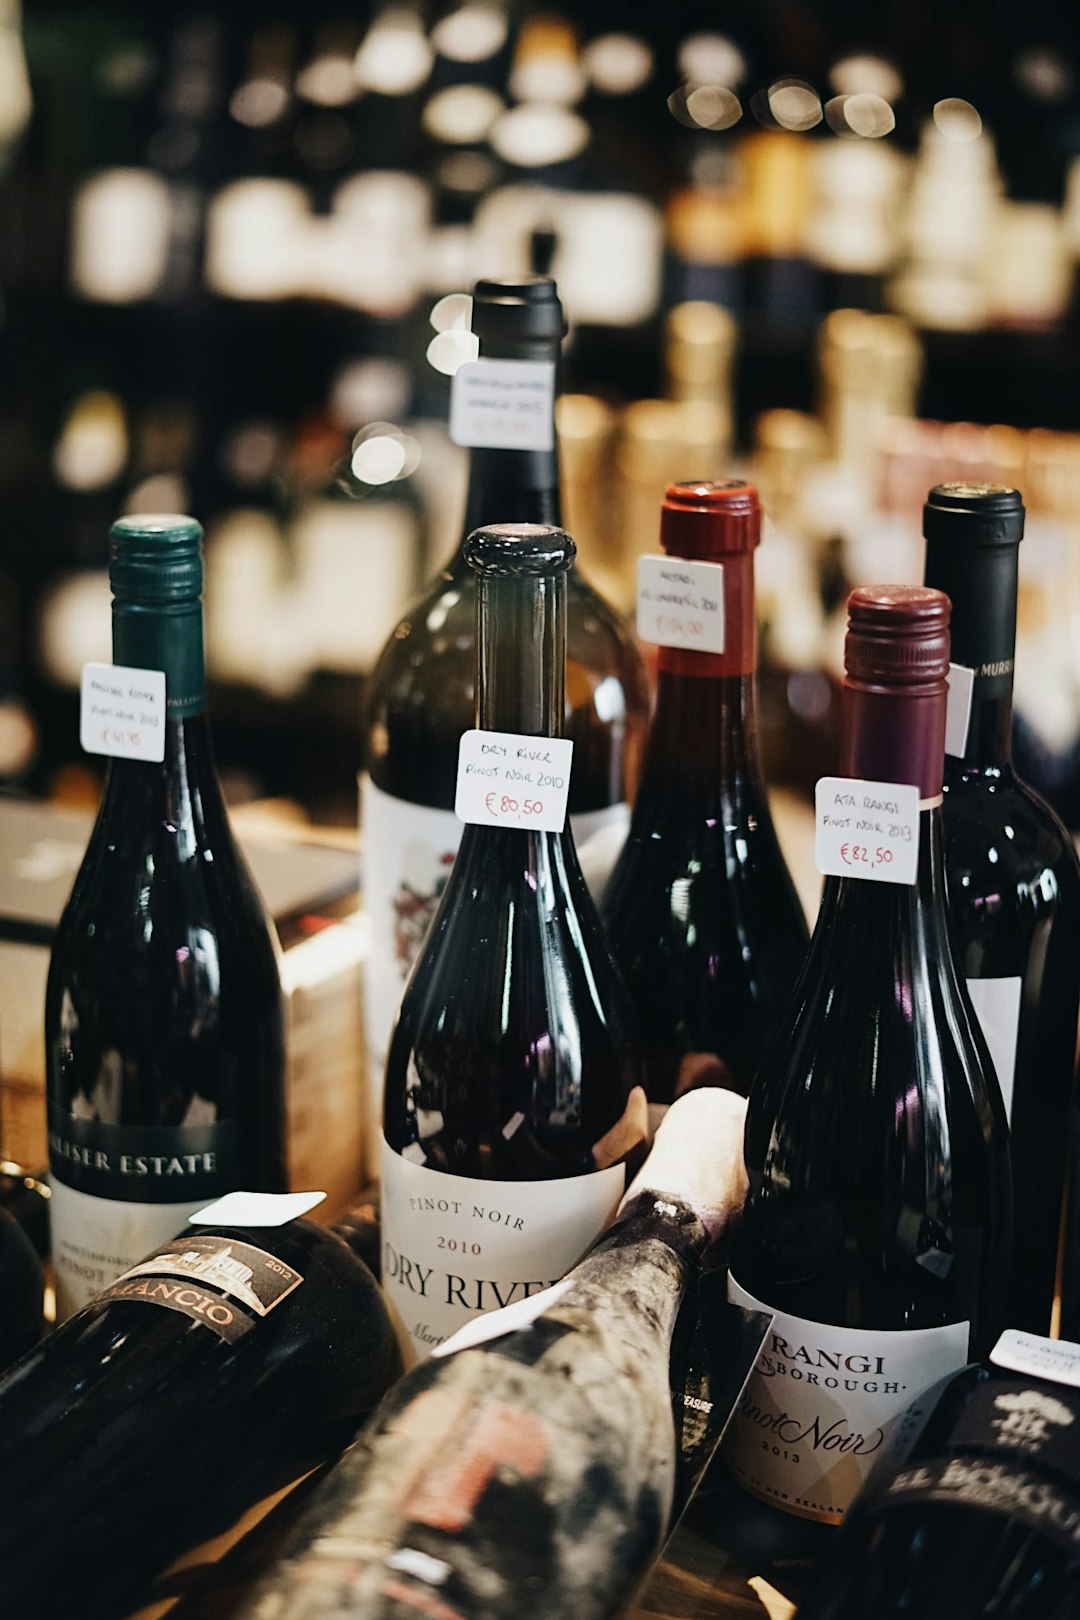 La mention "vin désalcoolisé" fait débat en Europe